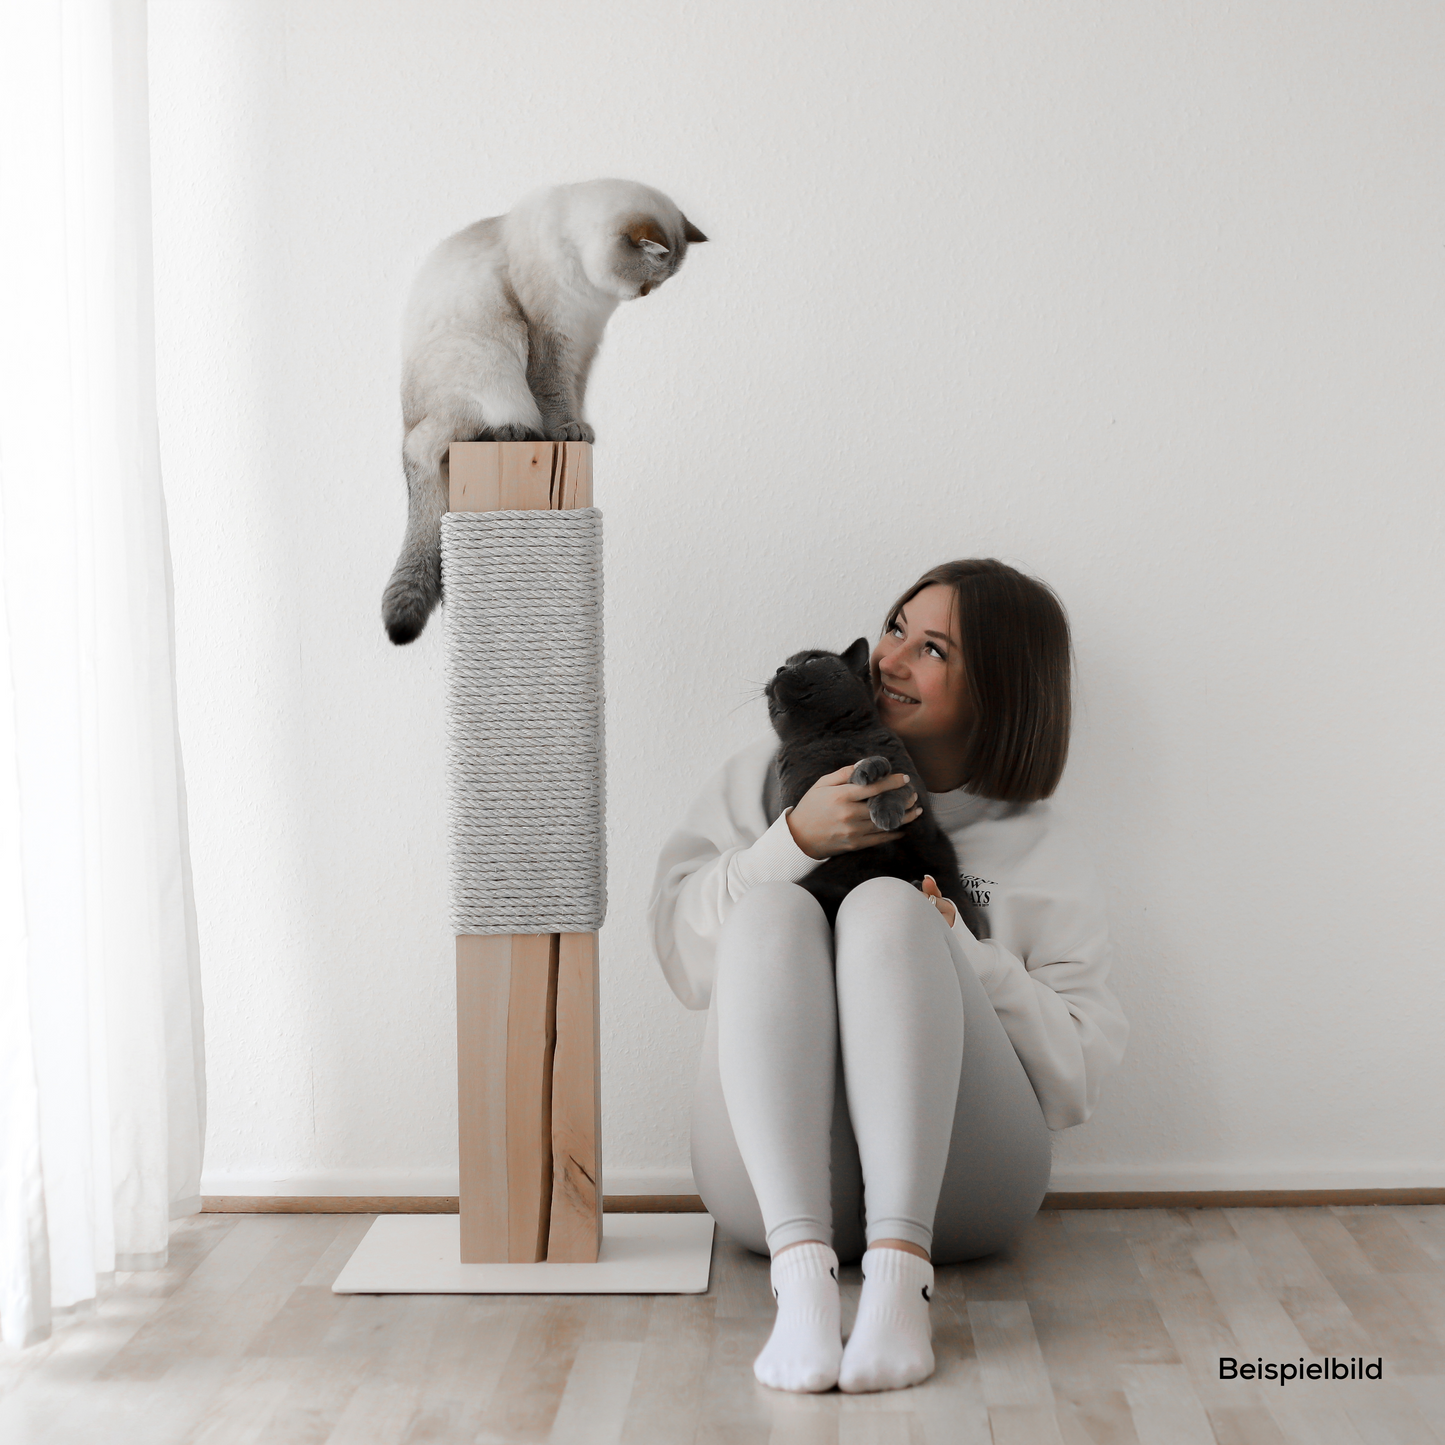 Kratzmöbel und Kratzsäulen für eine moderne und schöne Wohnung mit Katzen.